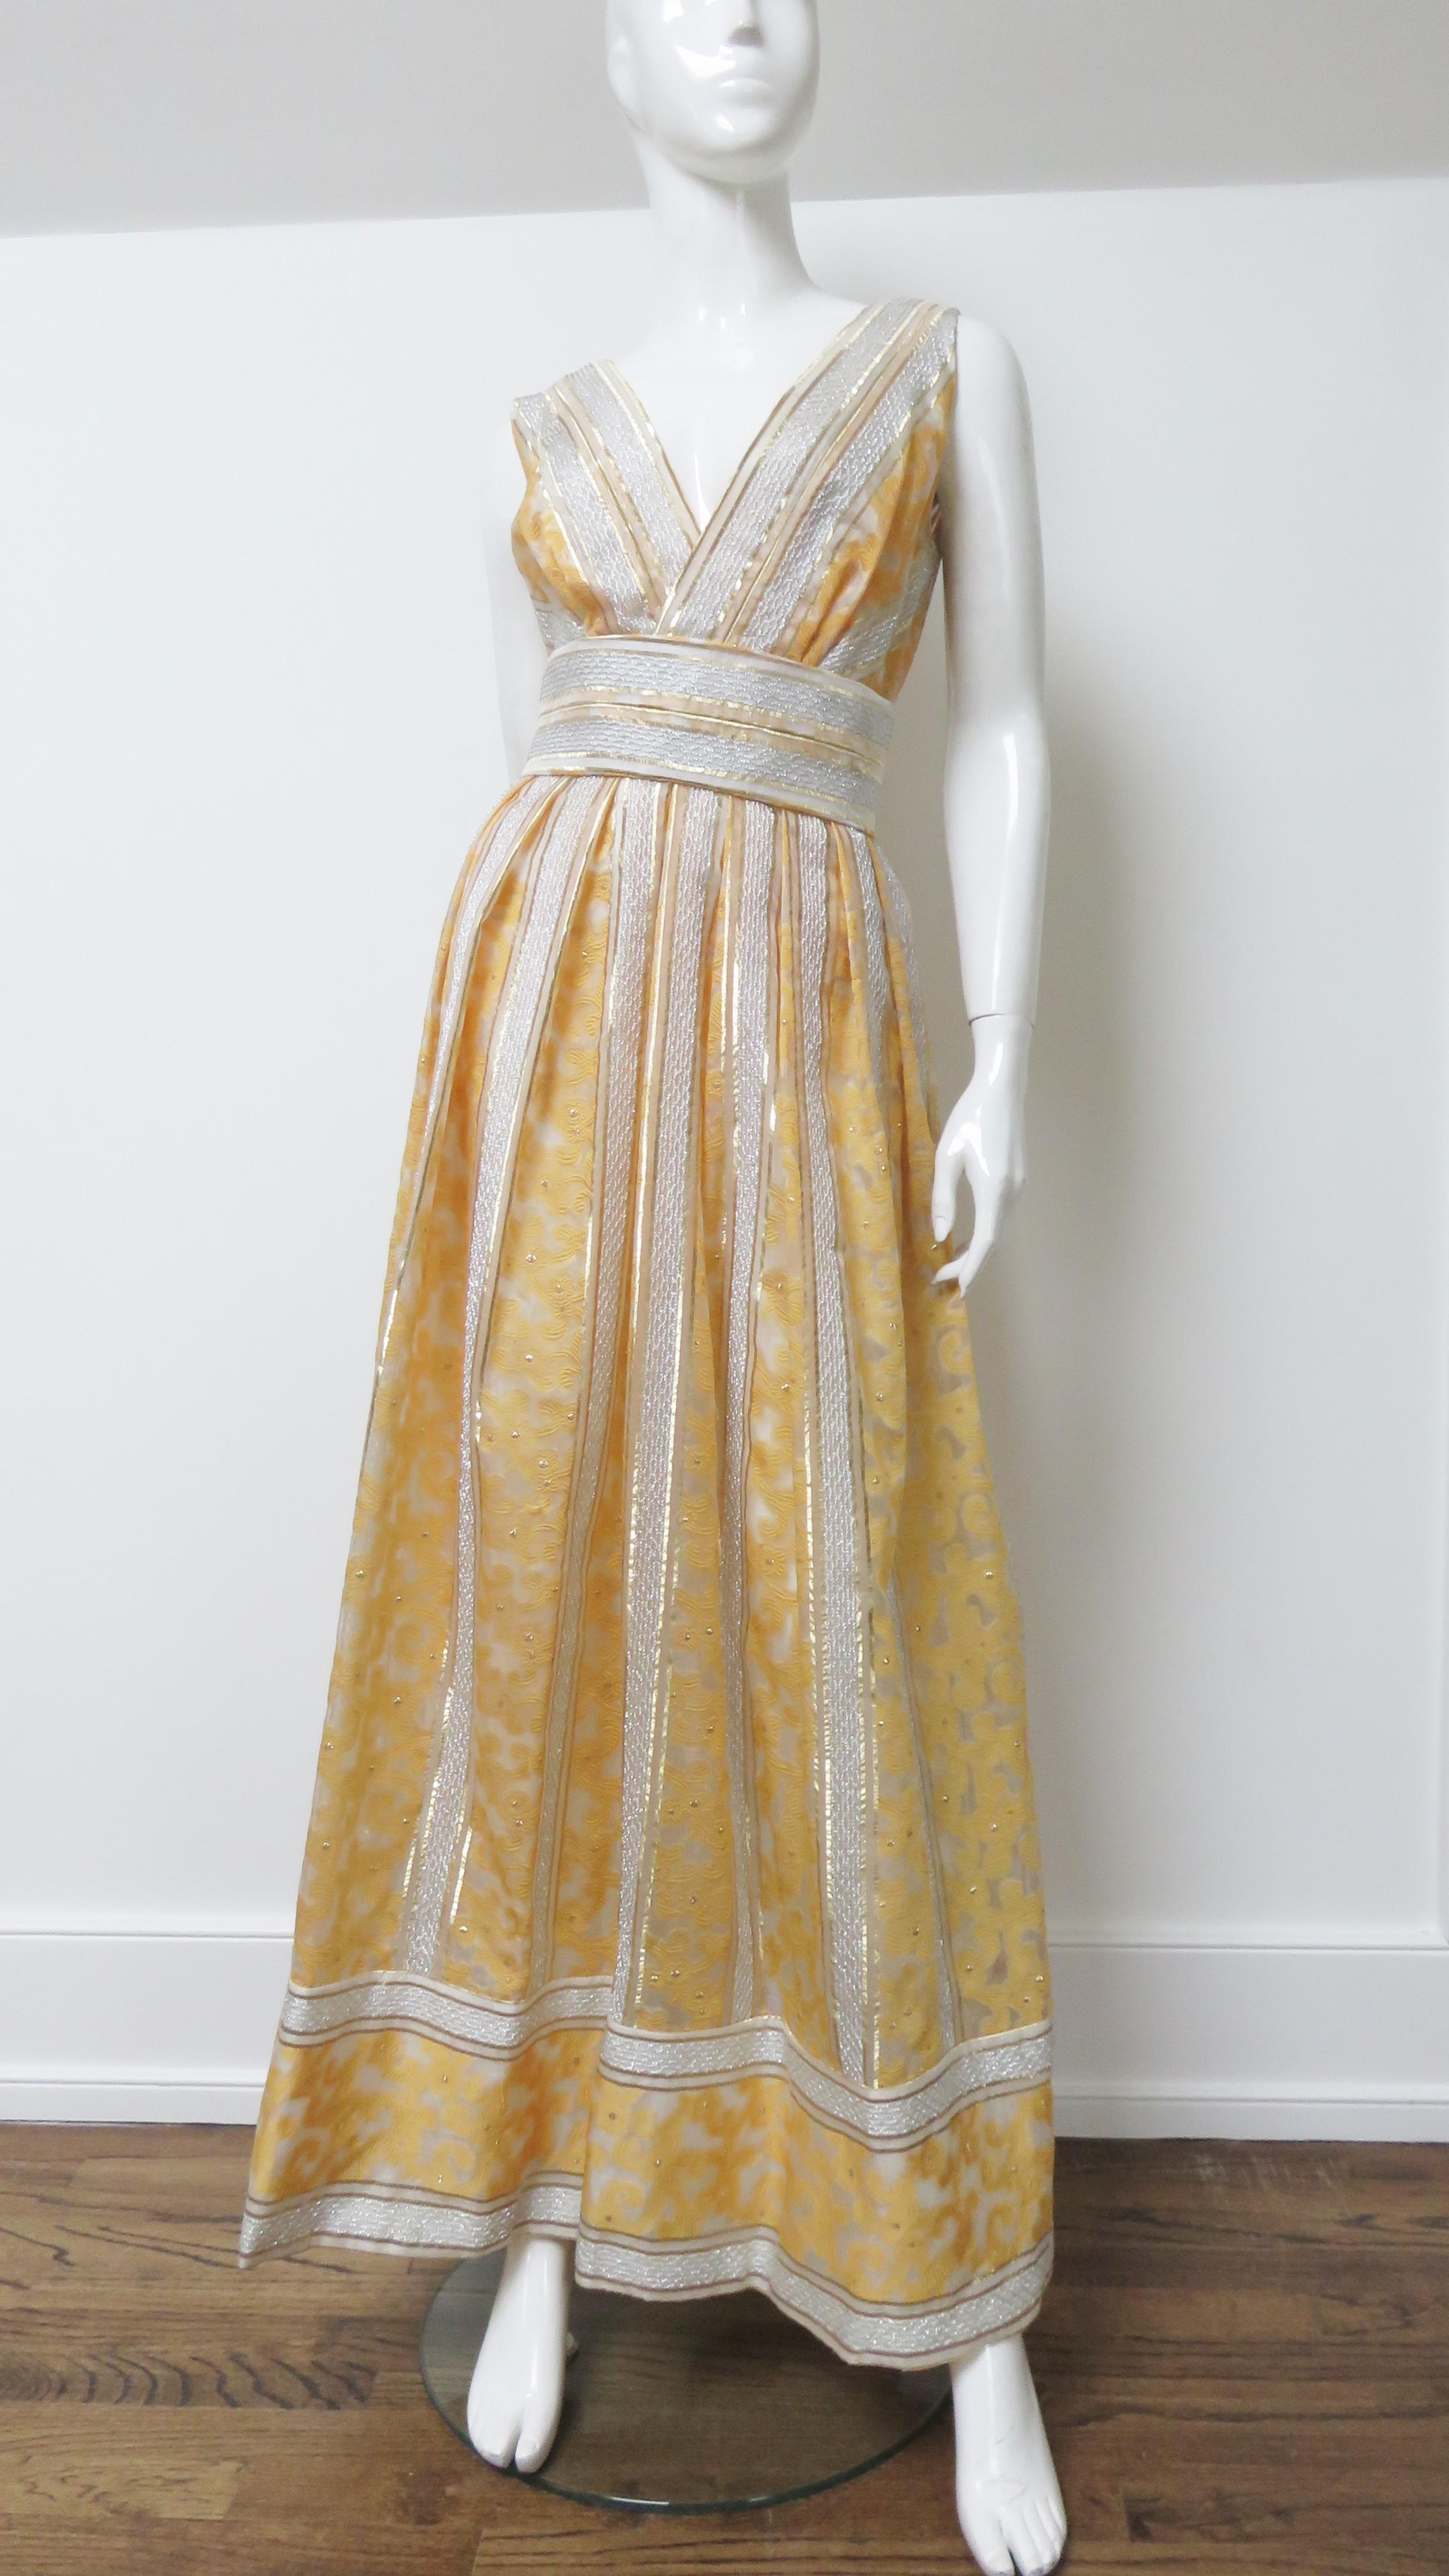 Ein wunderschönes Seidenkleid von Kent Originals aus dem britischen Hongkong der 1960er Jahre.  Der Stoff besteht aus vertikalen Bahnen mit goldorangenen Schnörkeln und geometrischen Mustern auf einem durchsichtigen, gebrochen weißen Hintergrund mit